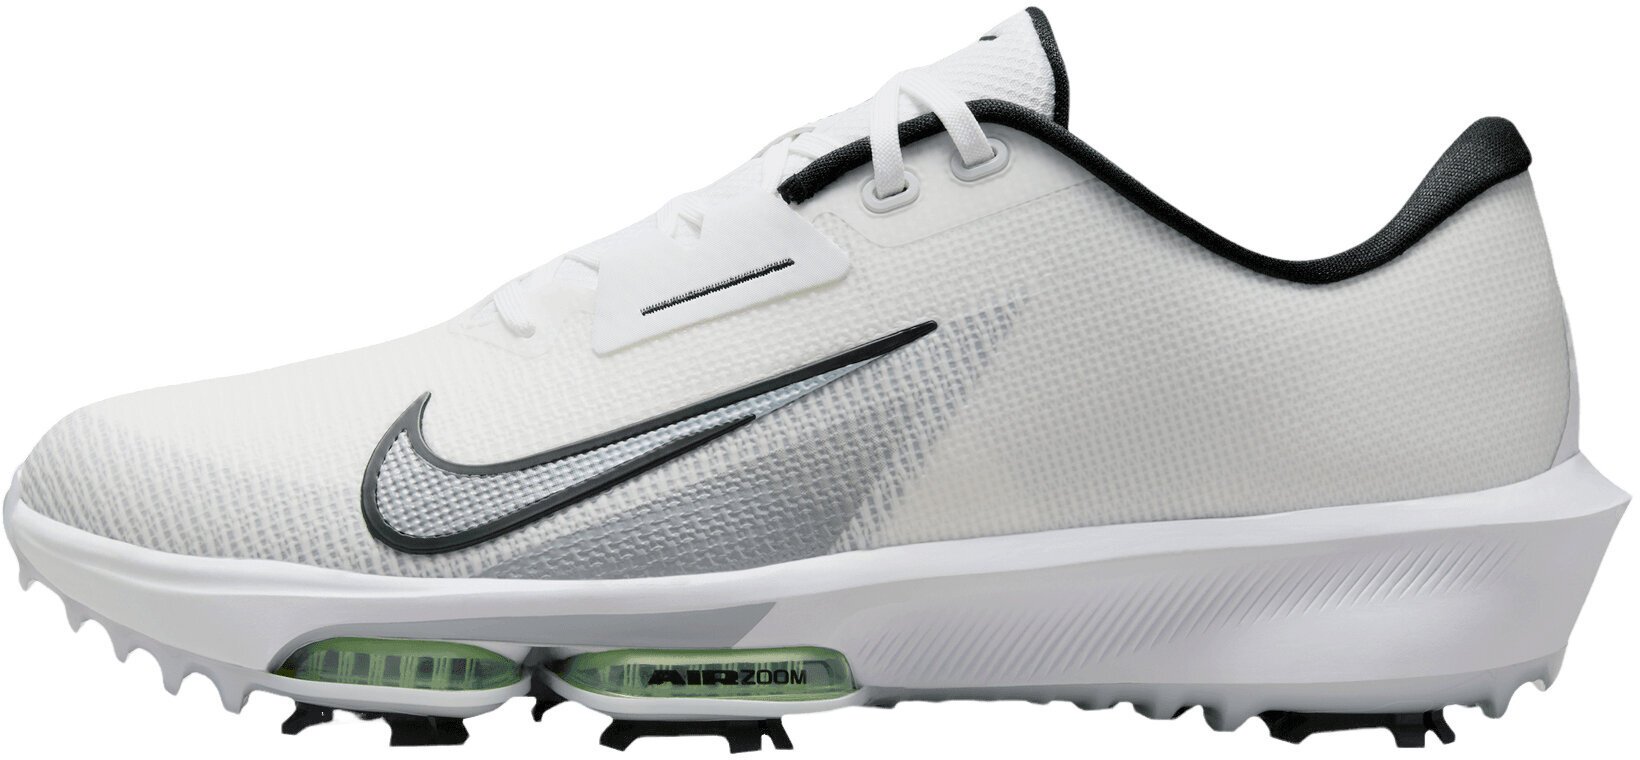 Calzado de golf para hombres Nike Air Zoom Infinity Tour Next 2 Unisex Golf Shoes White/Black/Vapor Green/Pure Platinum 44 Calzado de golf para hombres